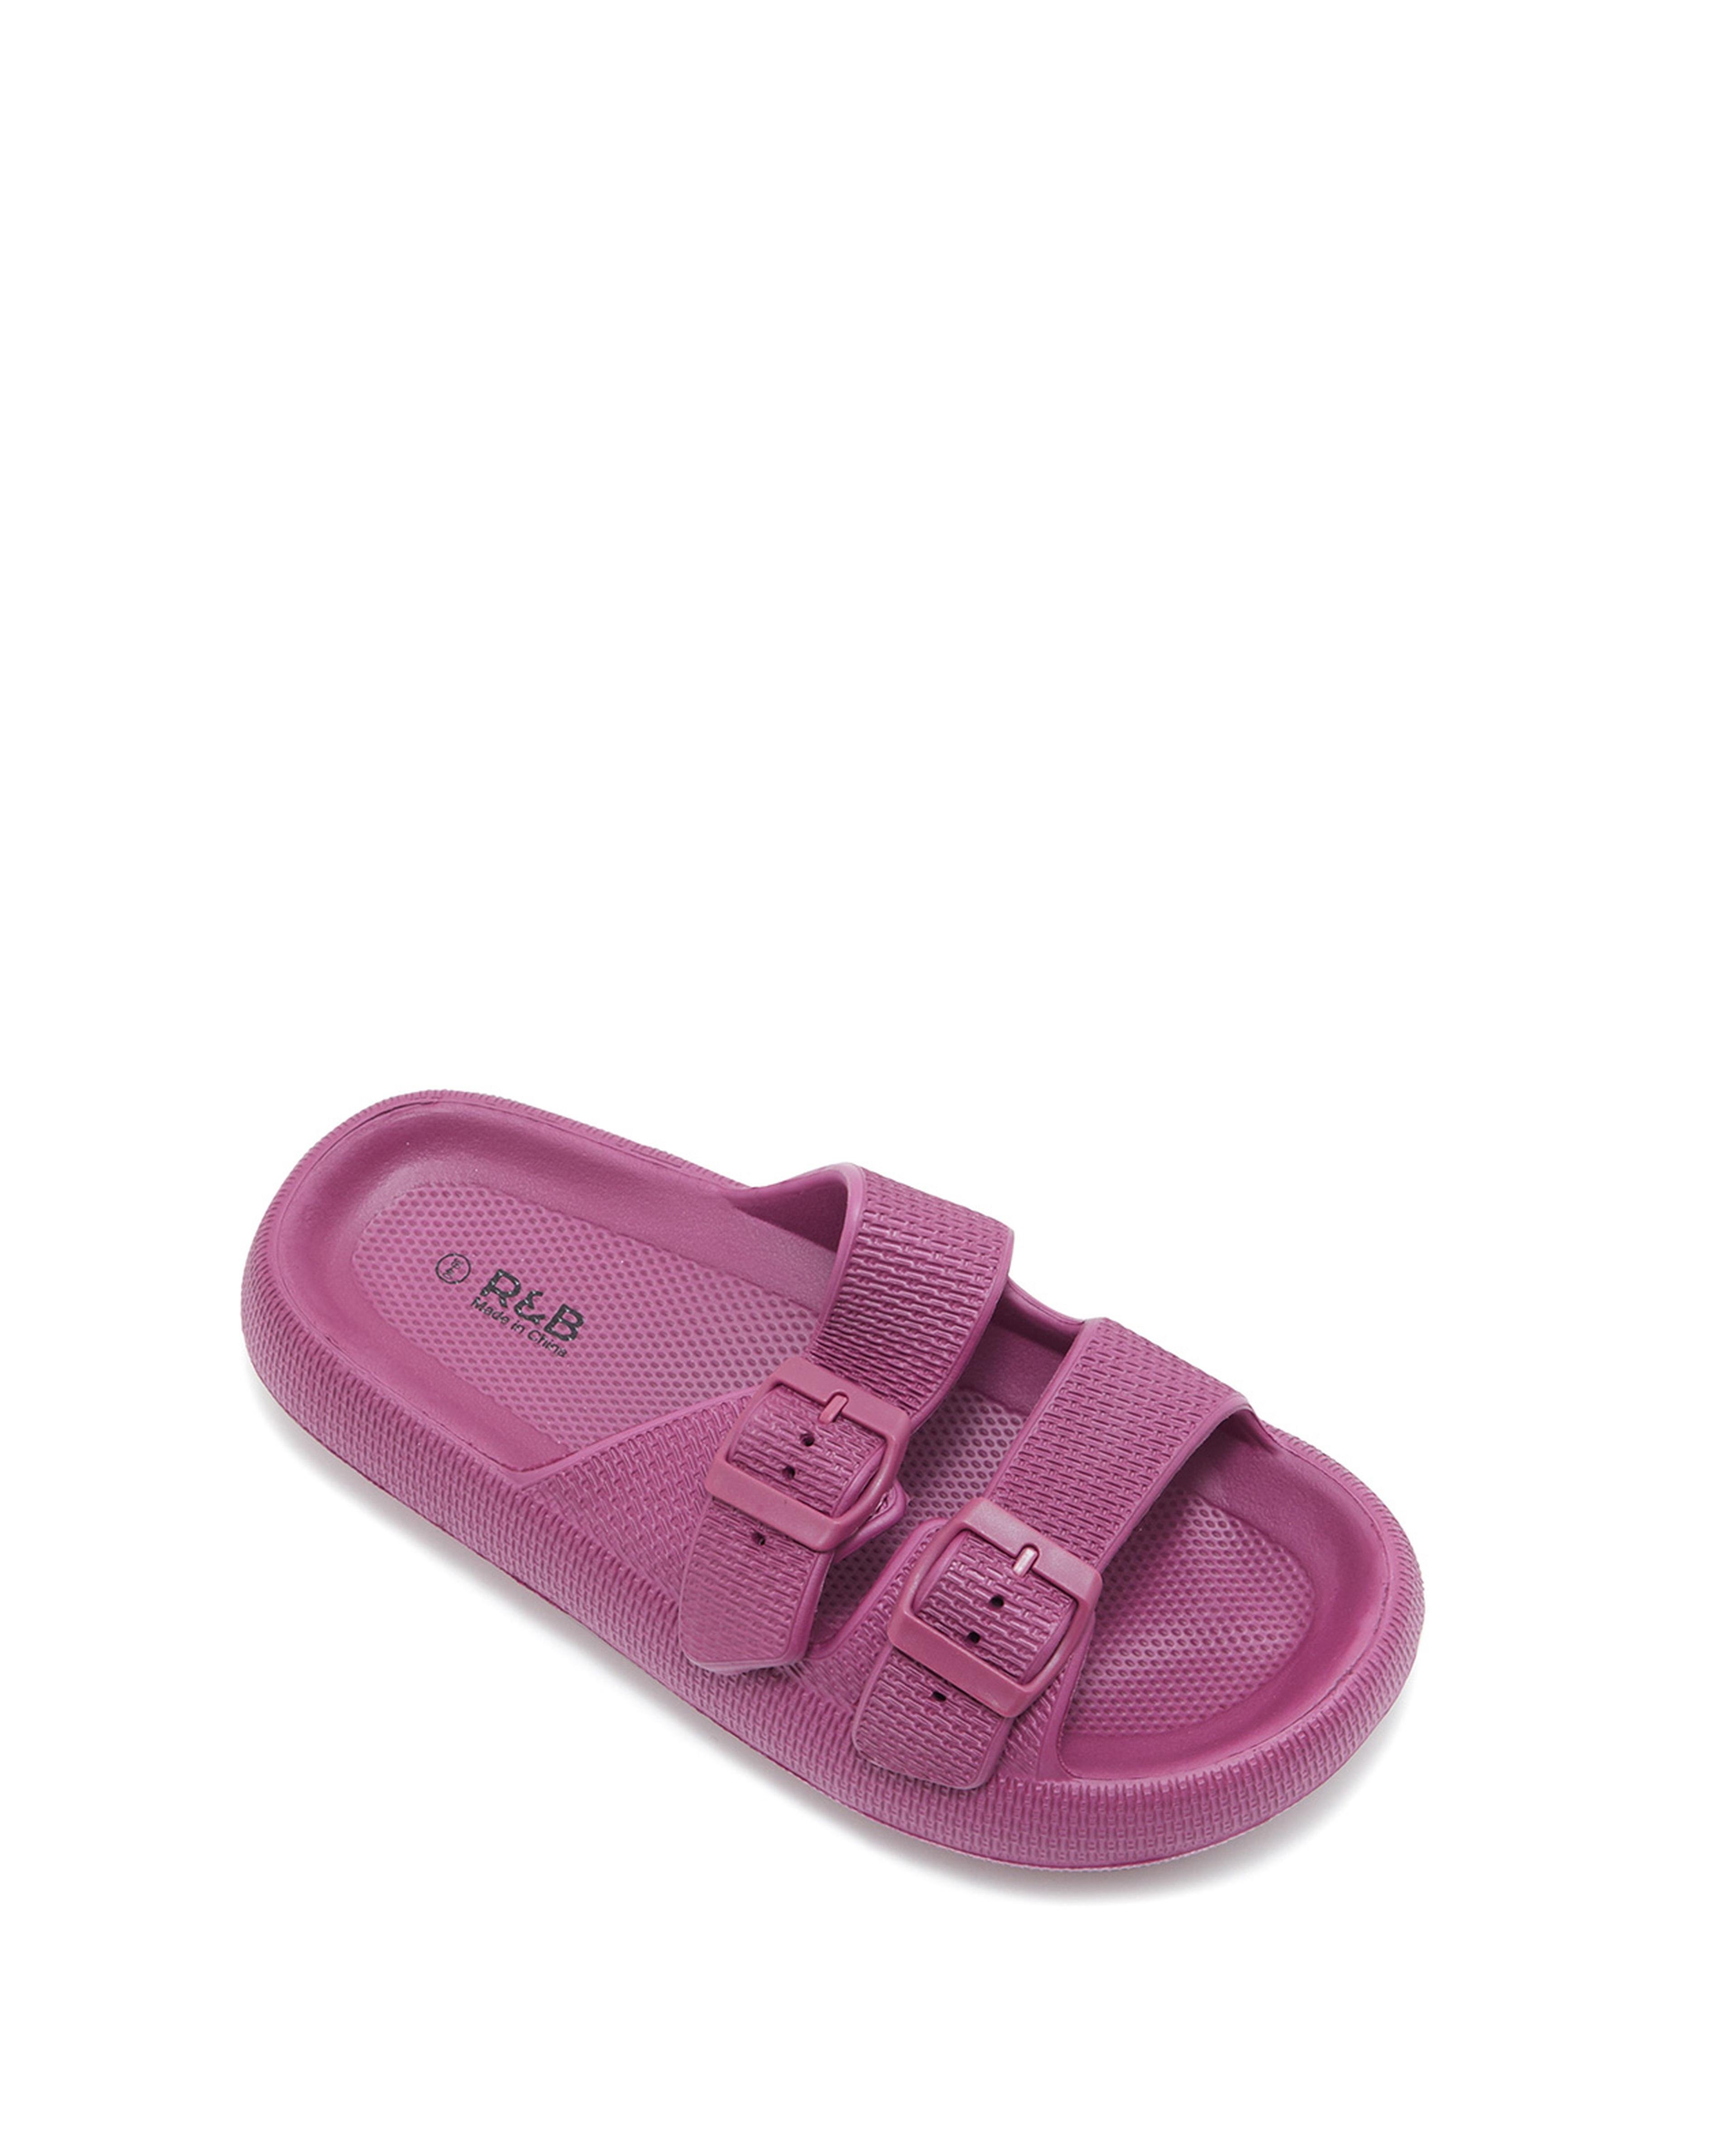 Buy Ladies' Slippers, Women's Sliders Online